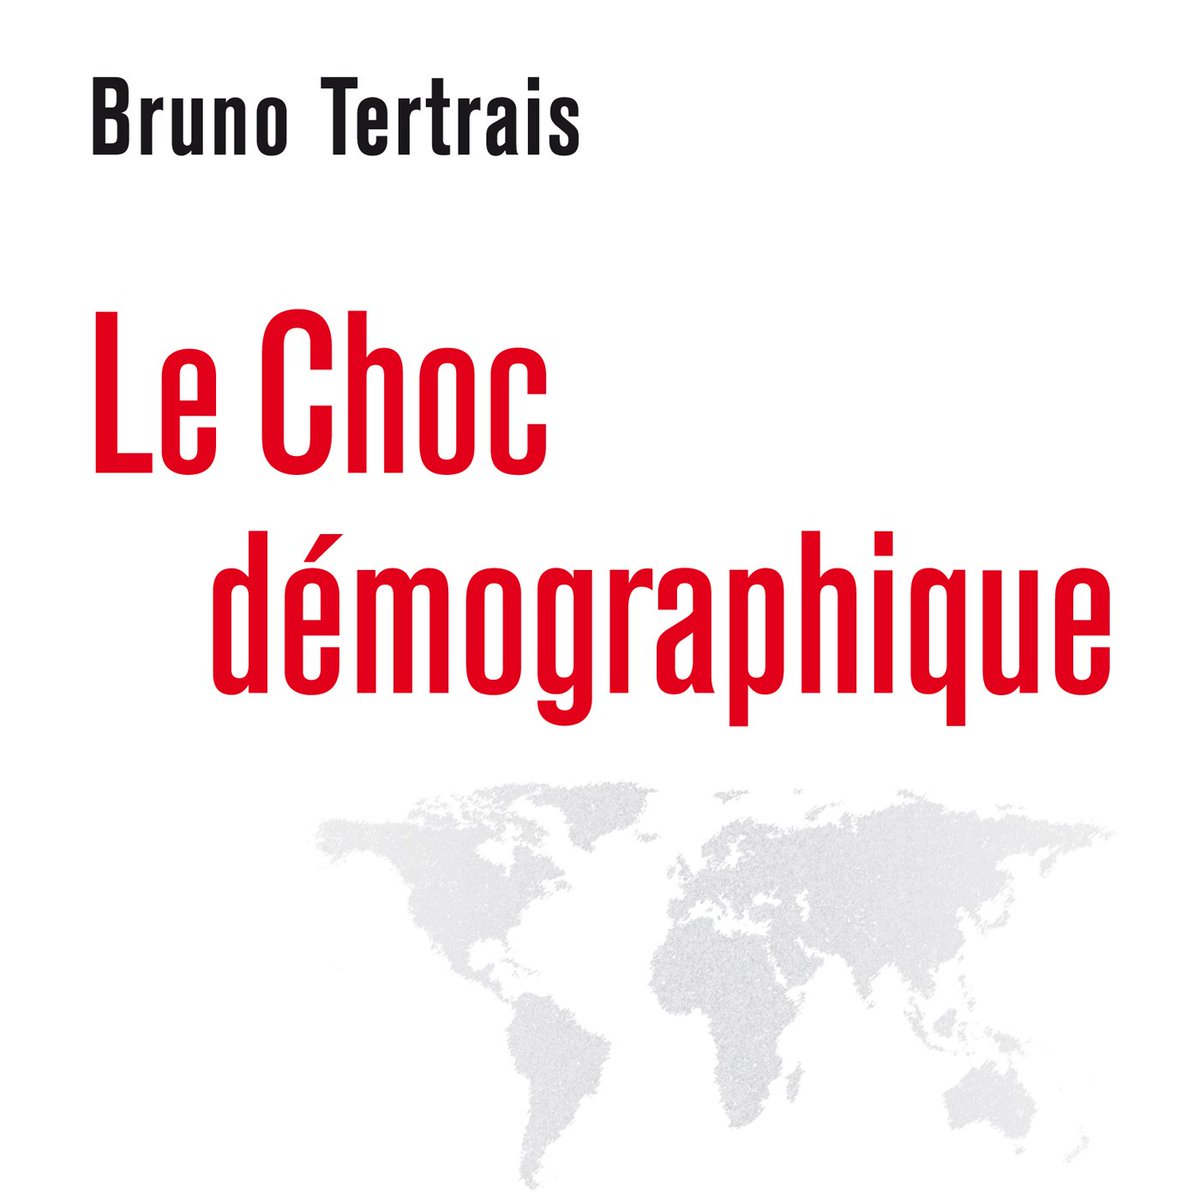 1/20 Parution aujourd’hui de mon livre Le Choc démographique aux éditions  @OdileJacob